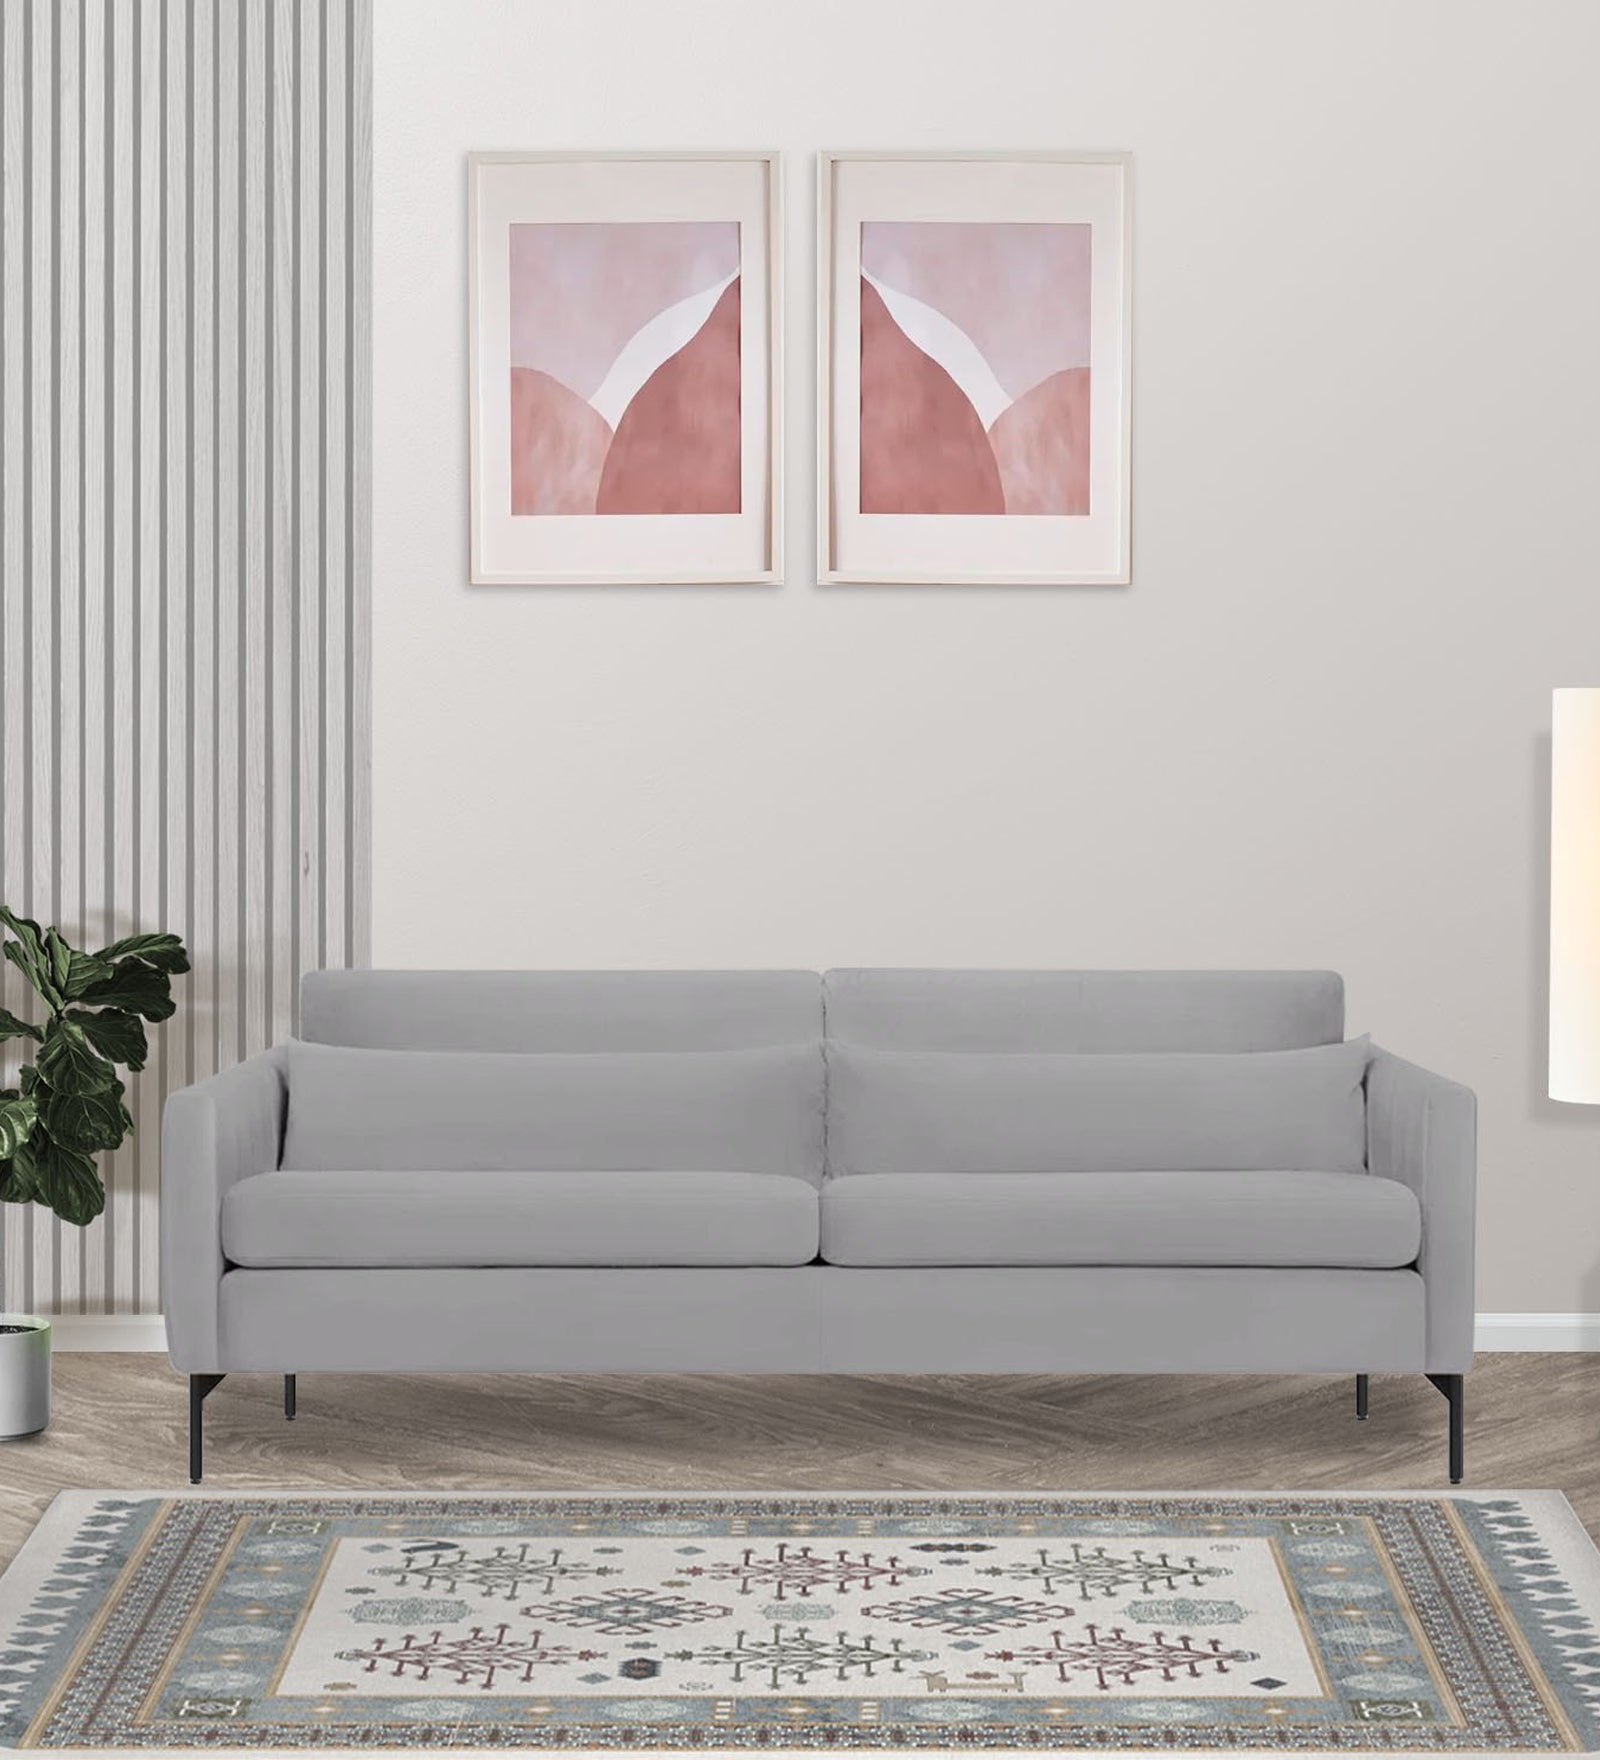 Haru Velvet 3 Seater Sofa in Light Grey Colour